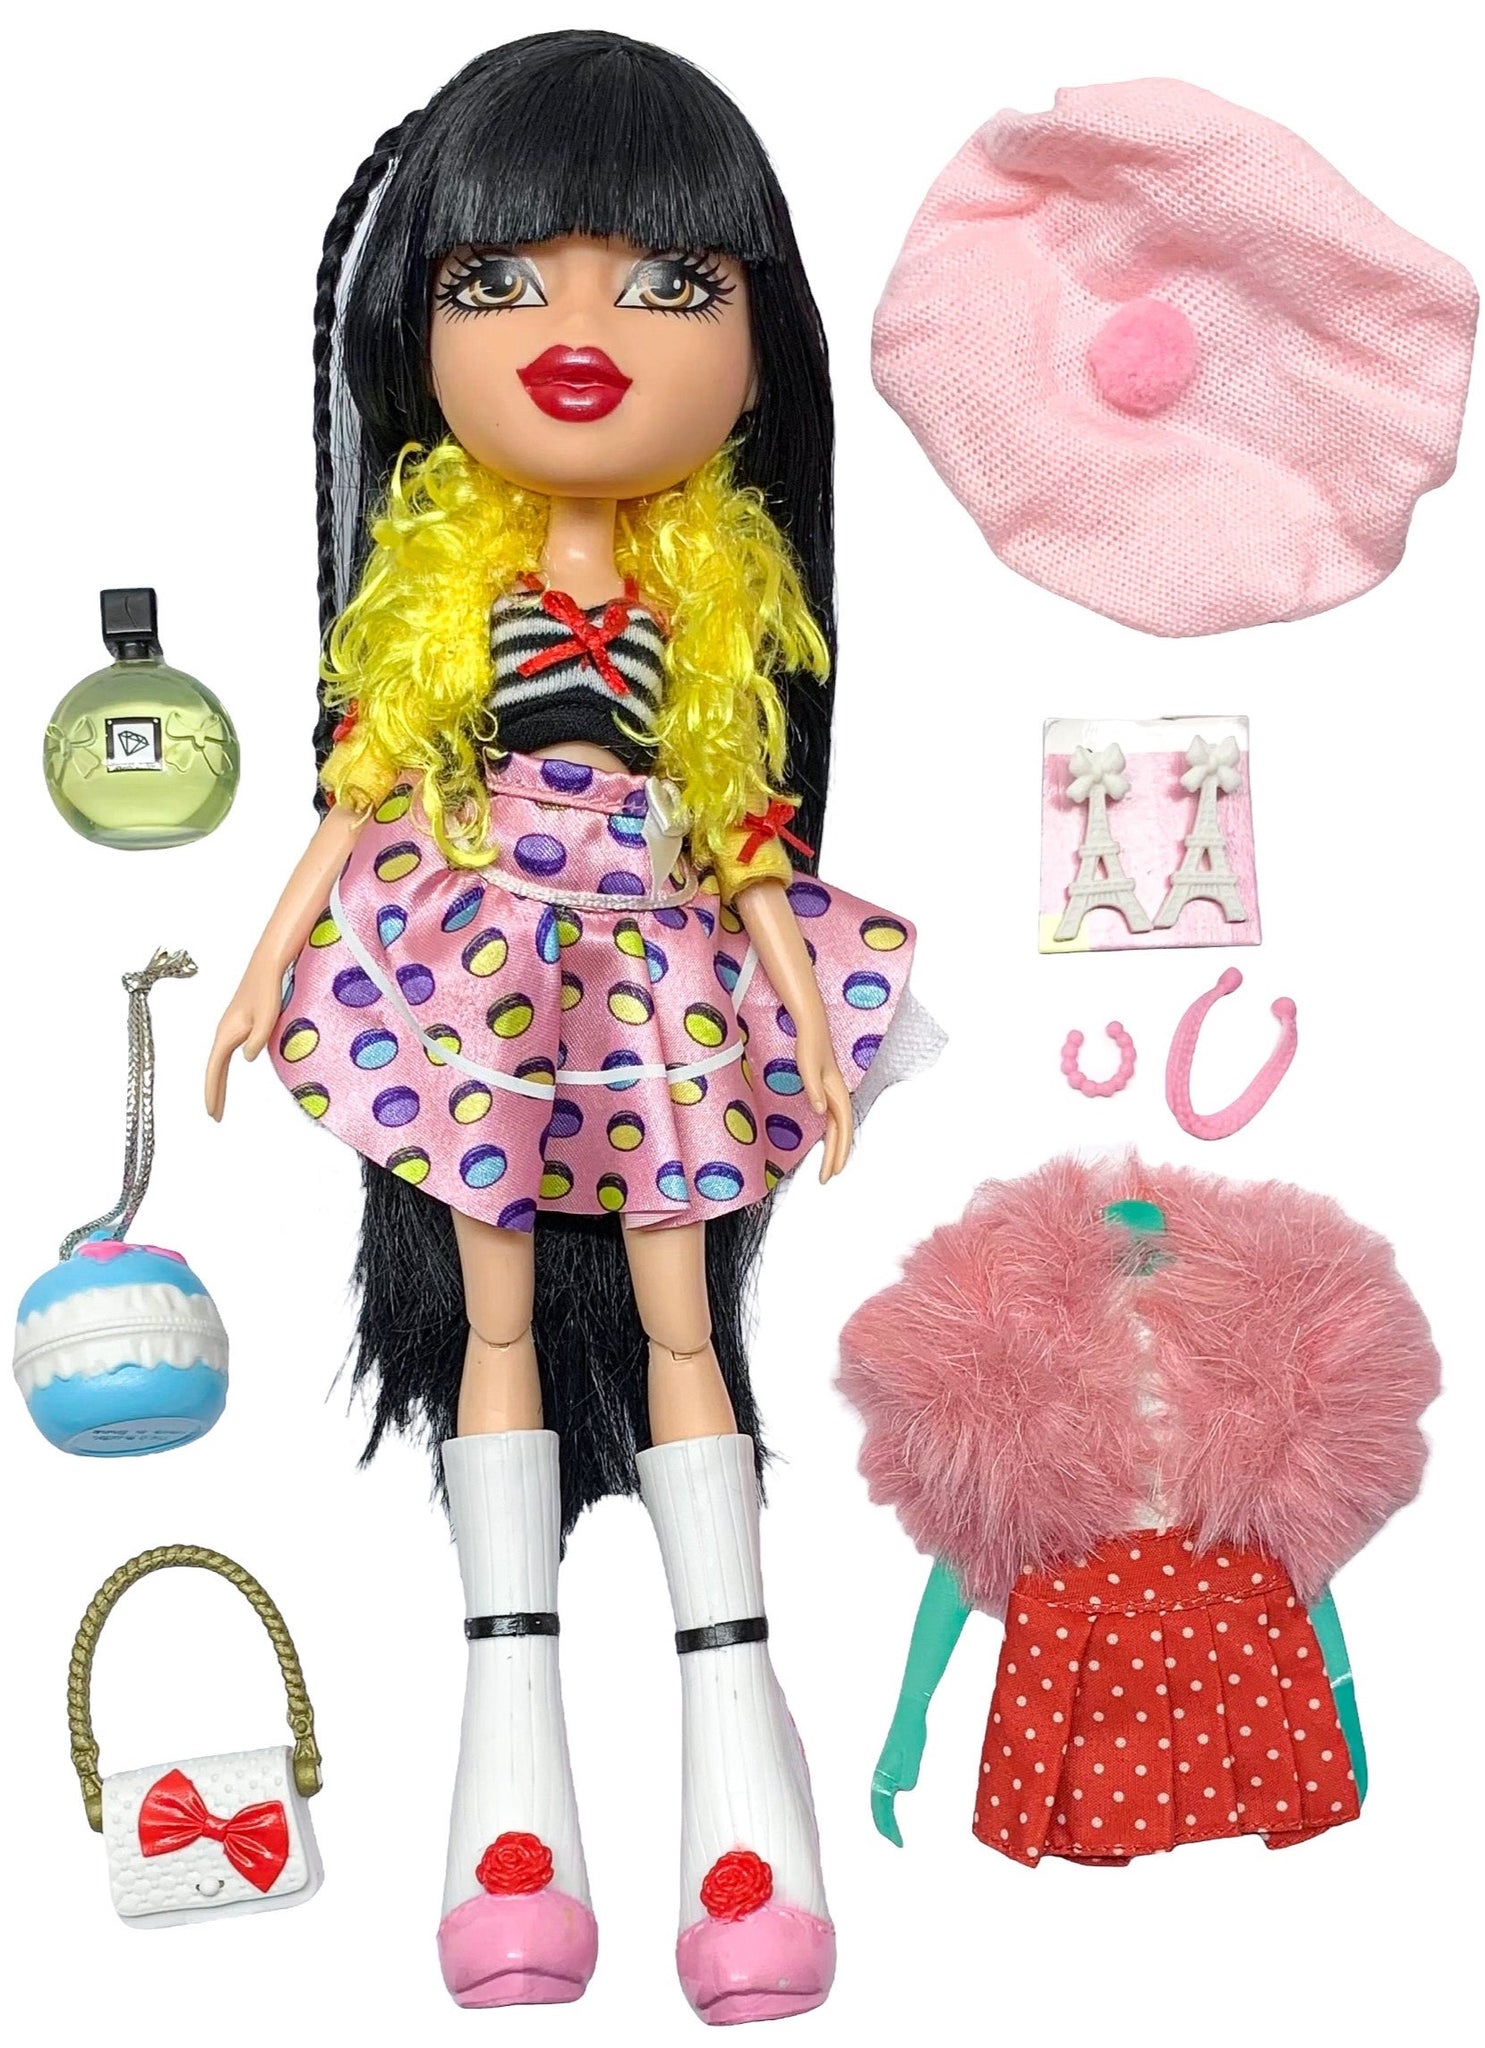 Bratz kumi - Dolls & Accessories